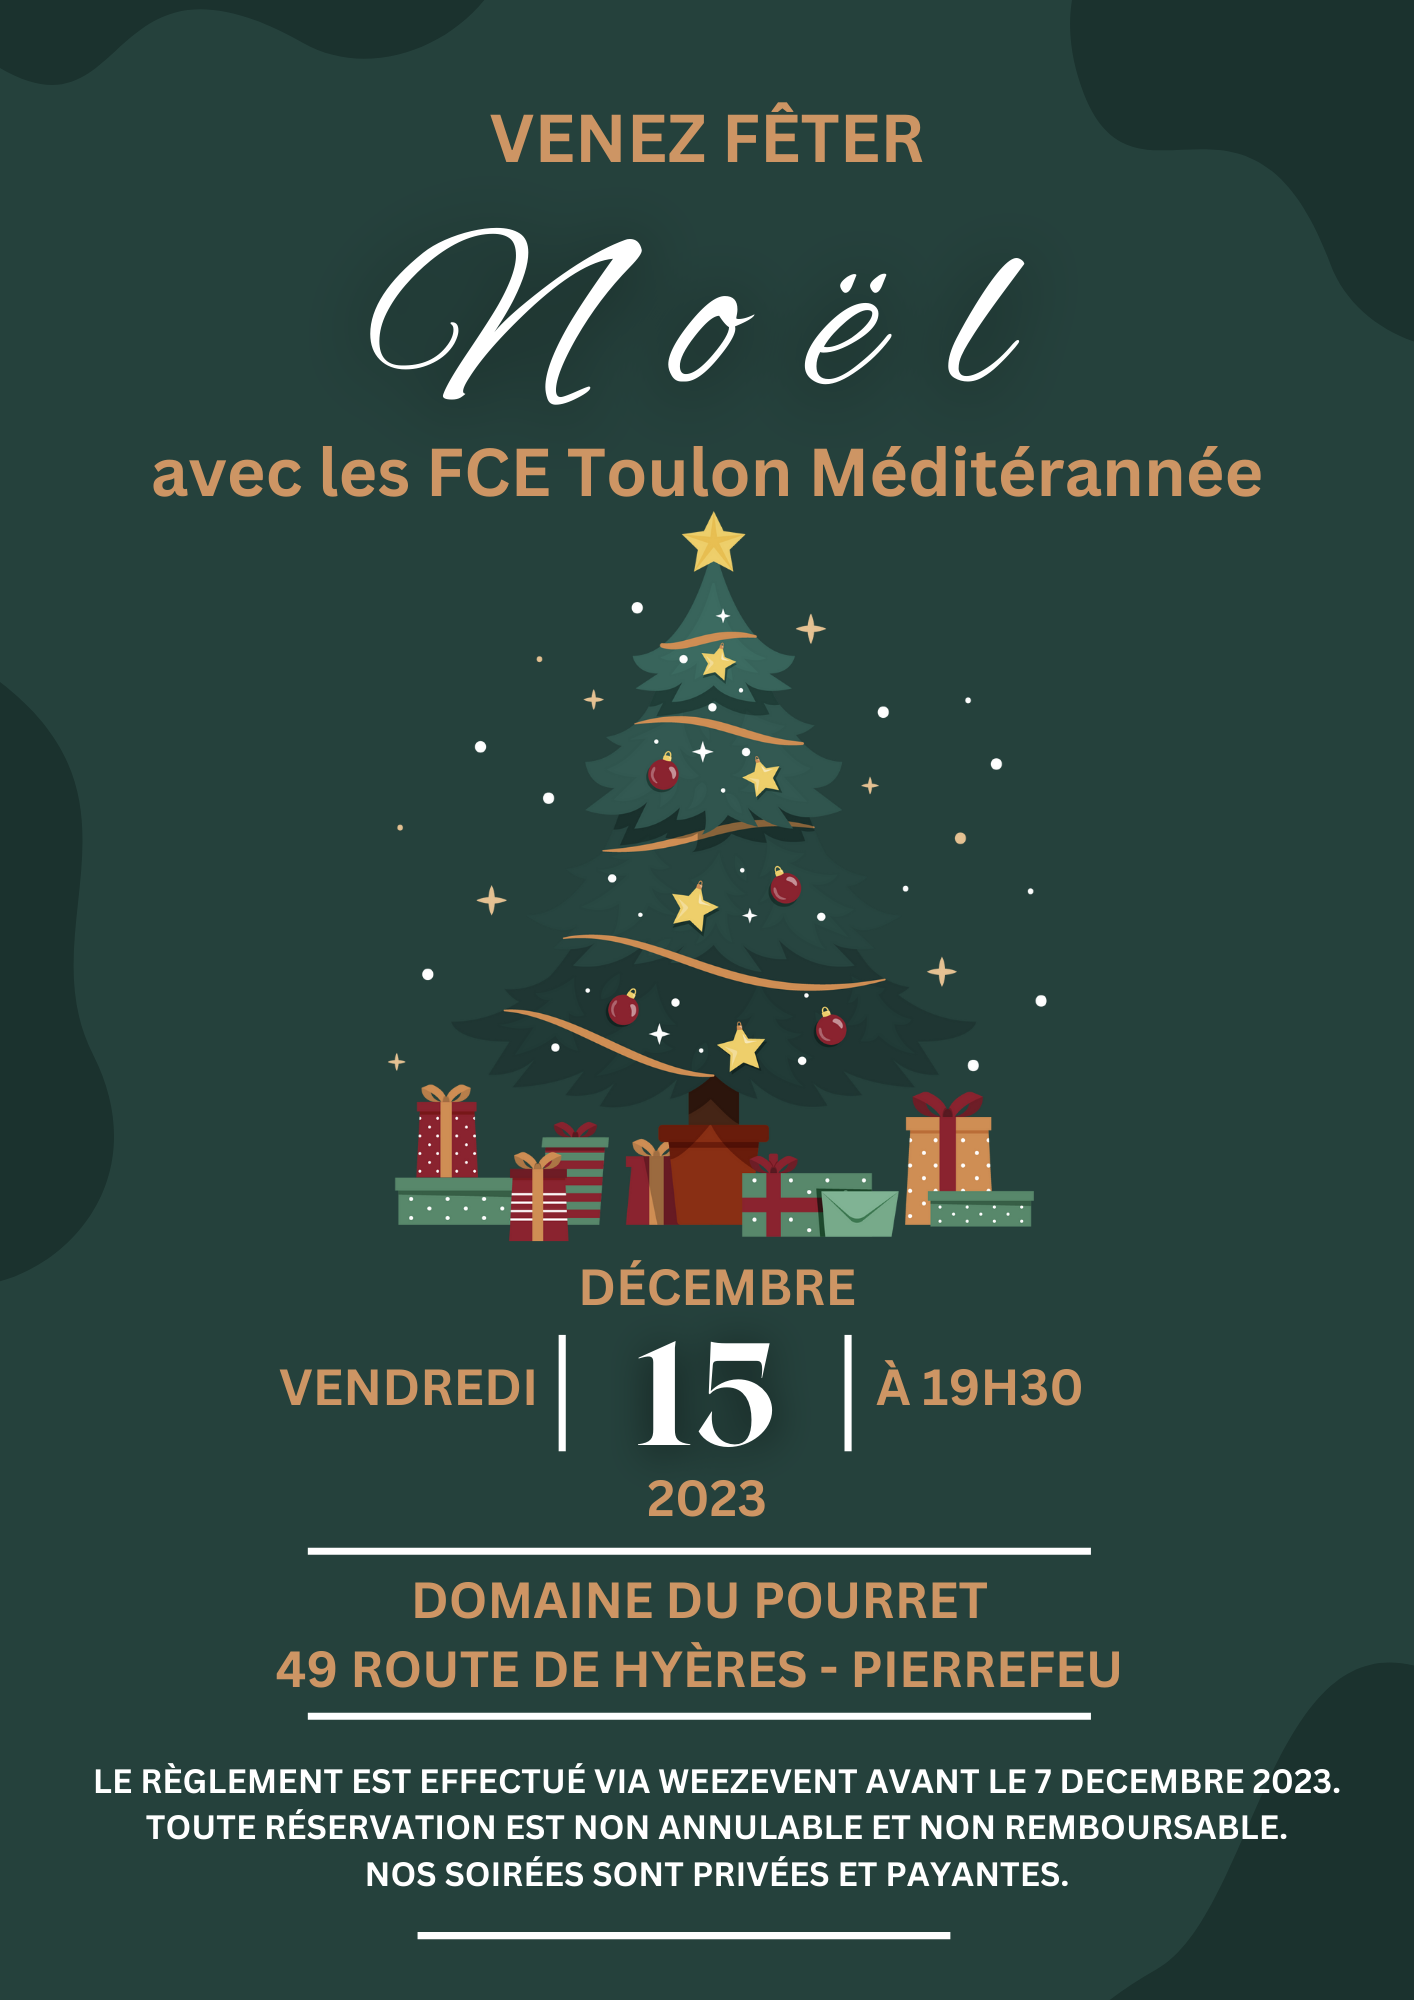 FCE Les FCE Toulon fêtent Noël !